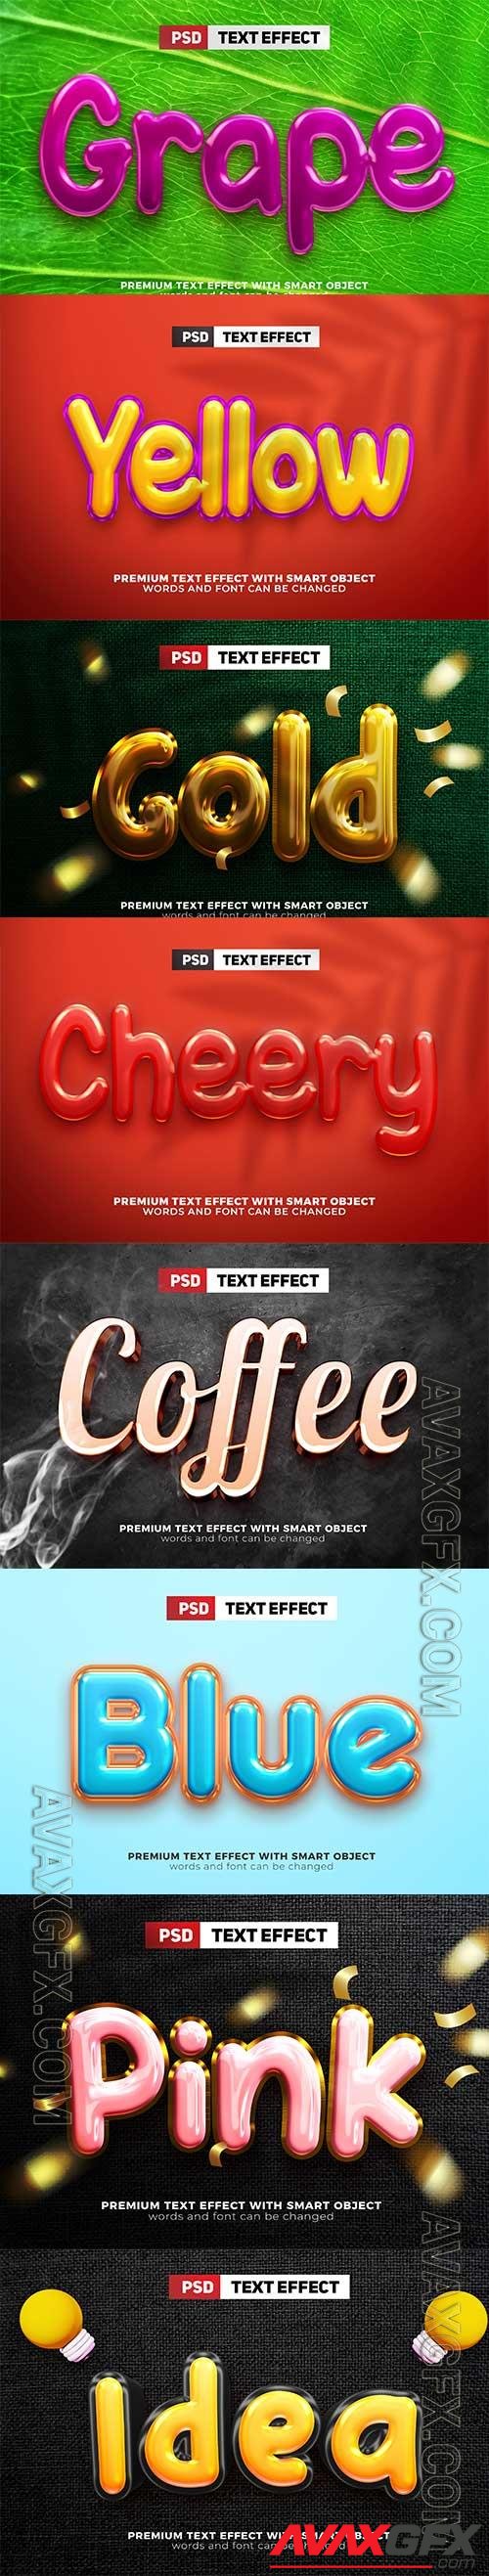 Psd text effect set vol 244